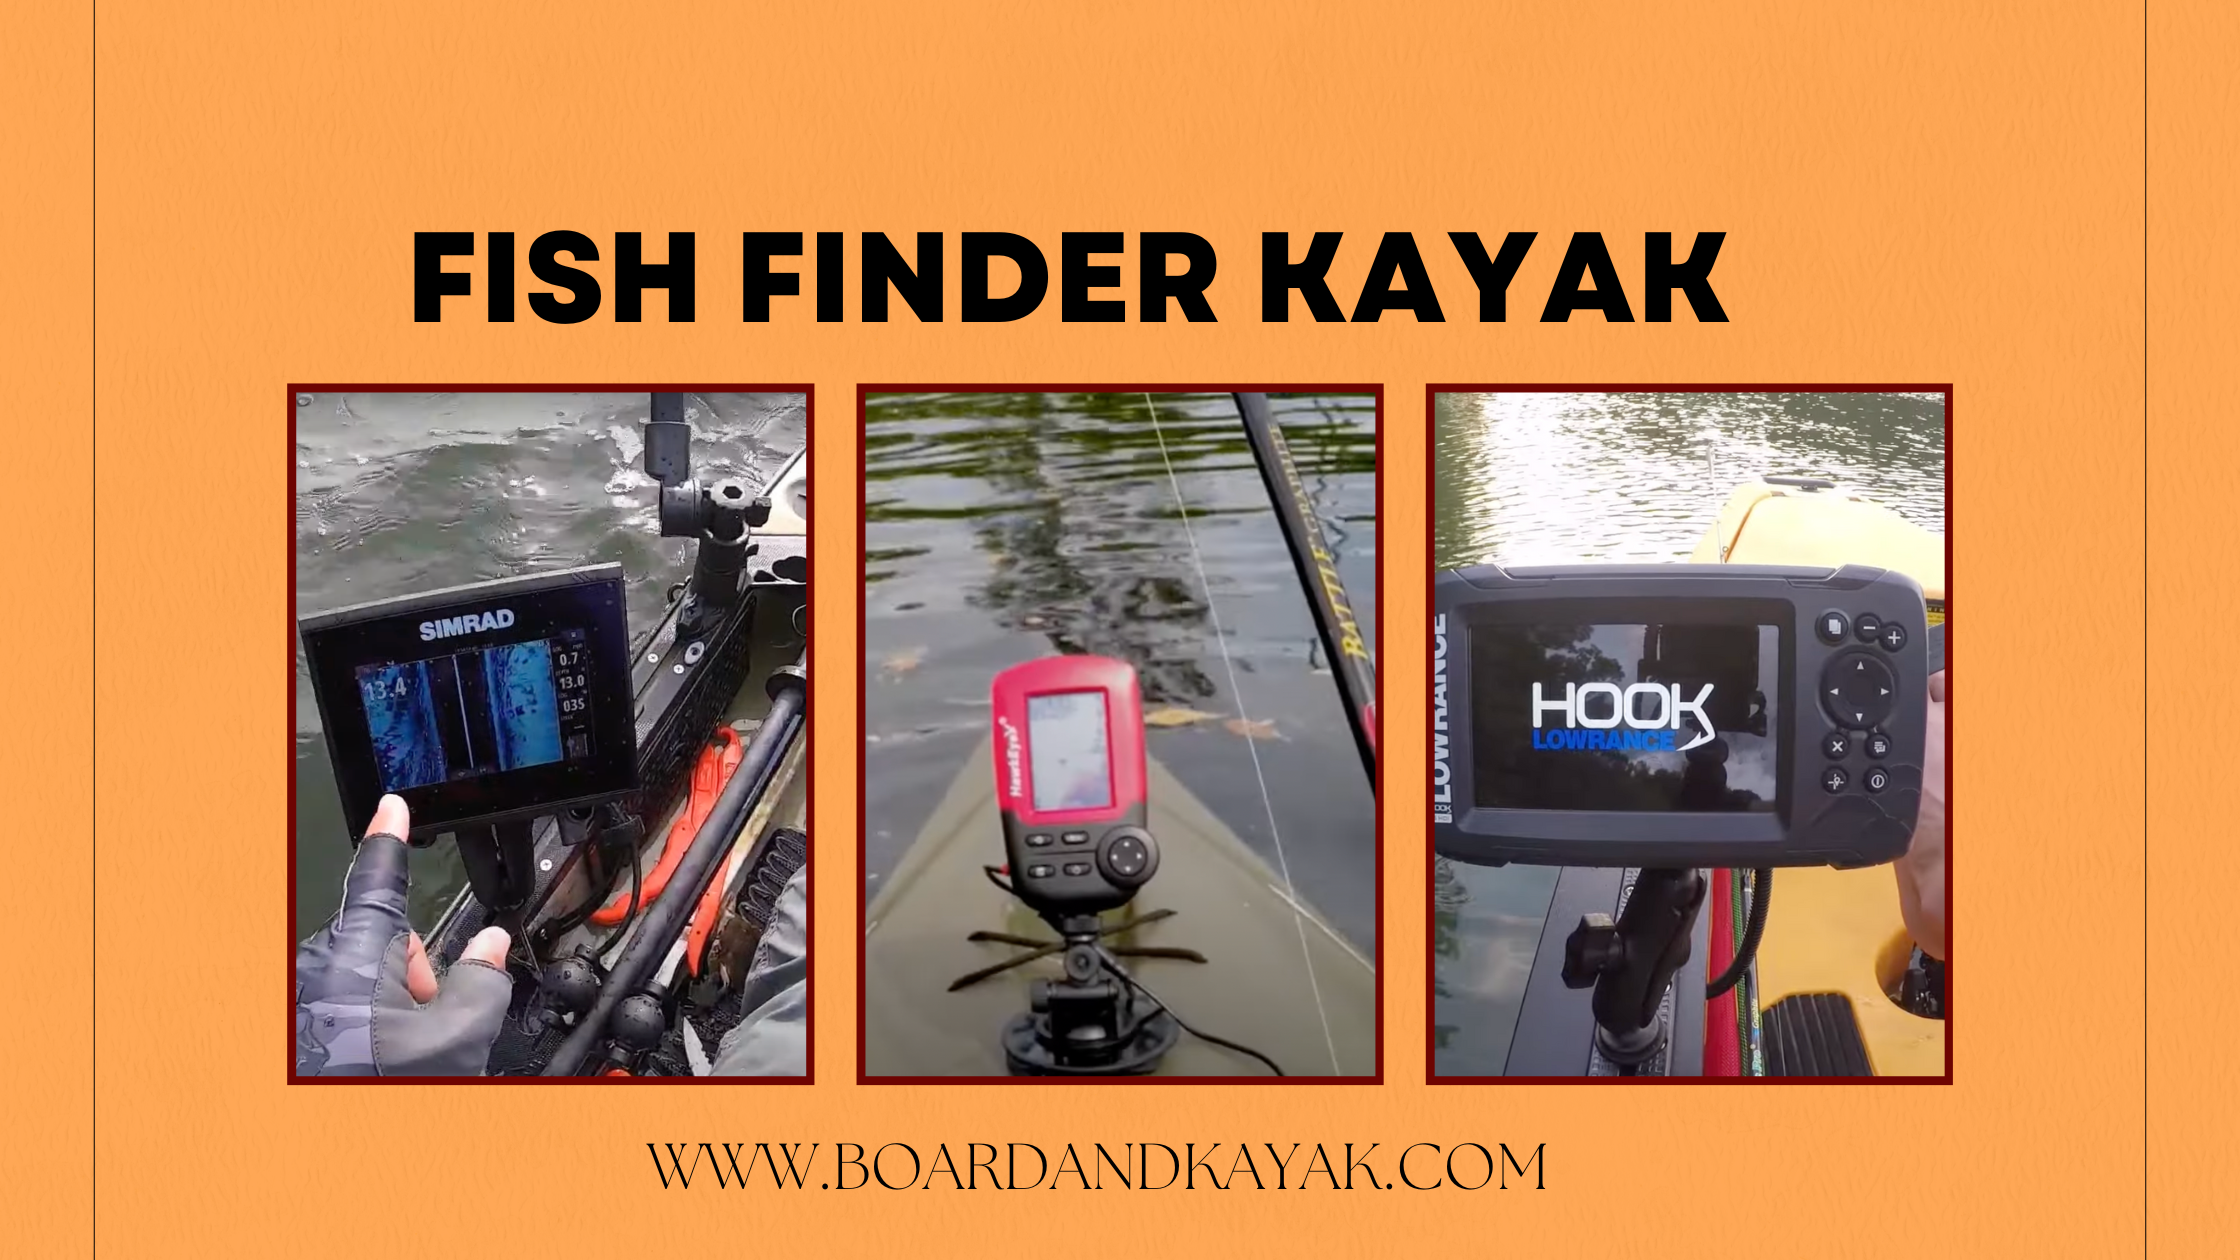 Fish Finder Kayak